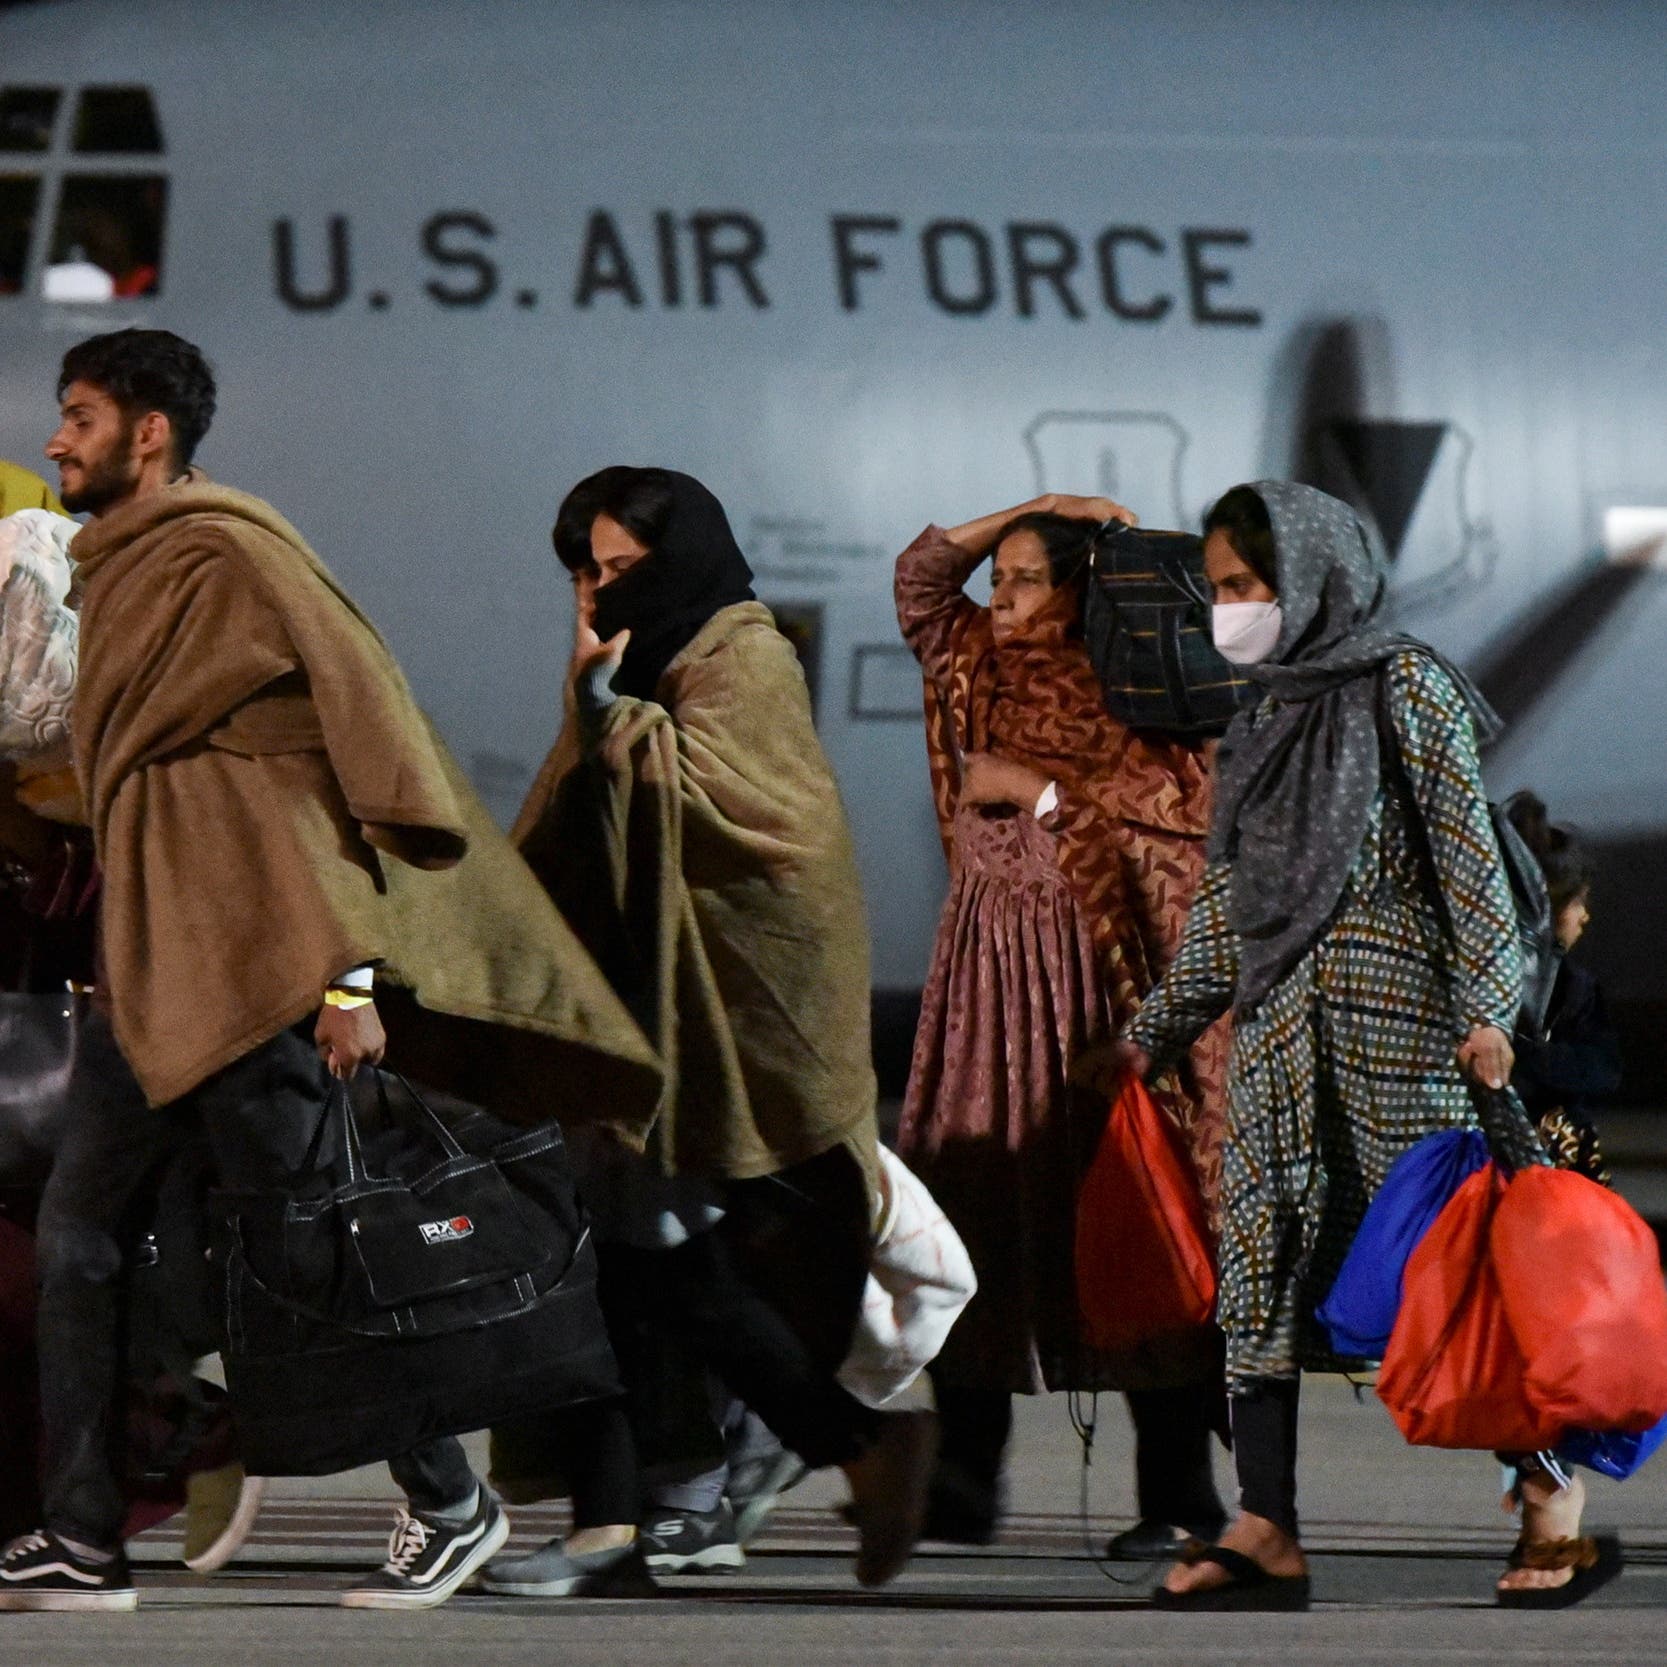 أميركا تدرس خيار إعادة بعض "اللاجئين" الأفغان إلى بلادهم